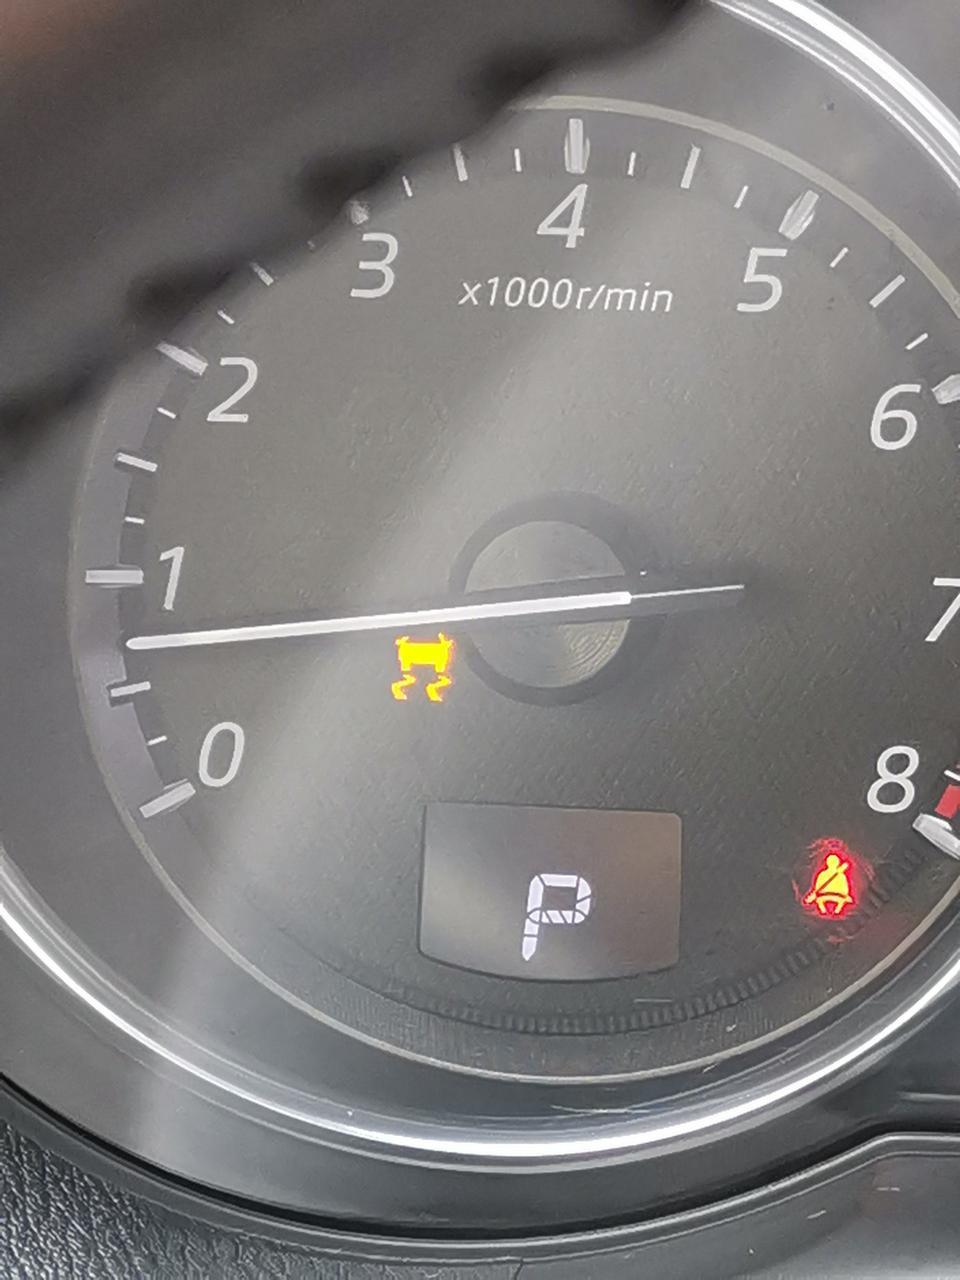 马自达cx5刚正常行驶过程中防滑灯突然亮了不知道是什么问题